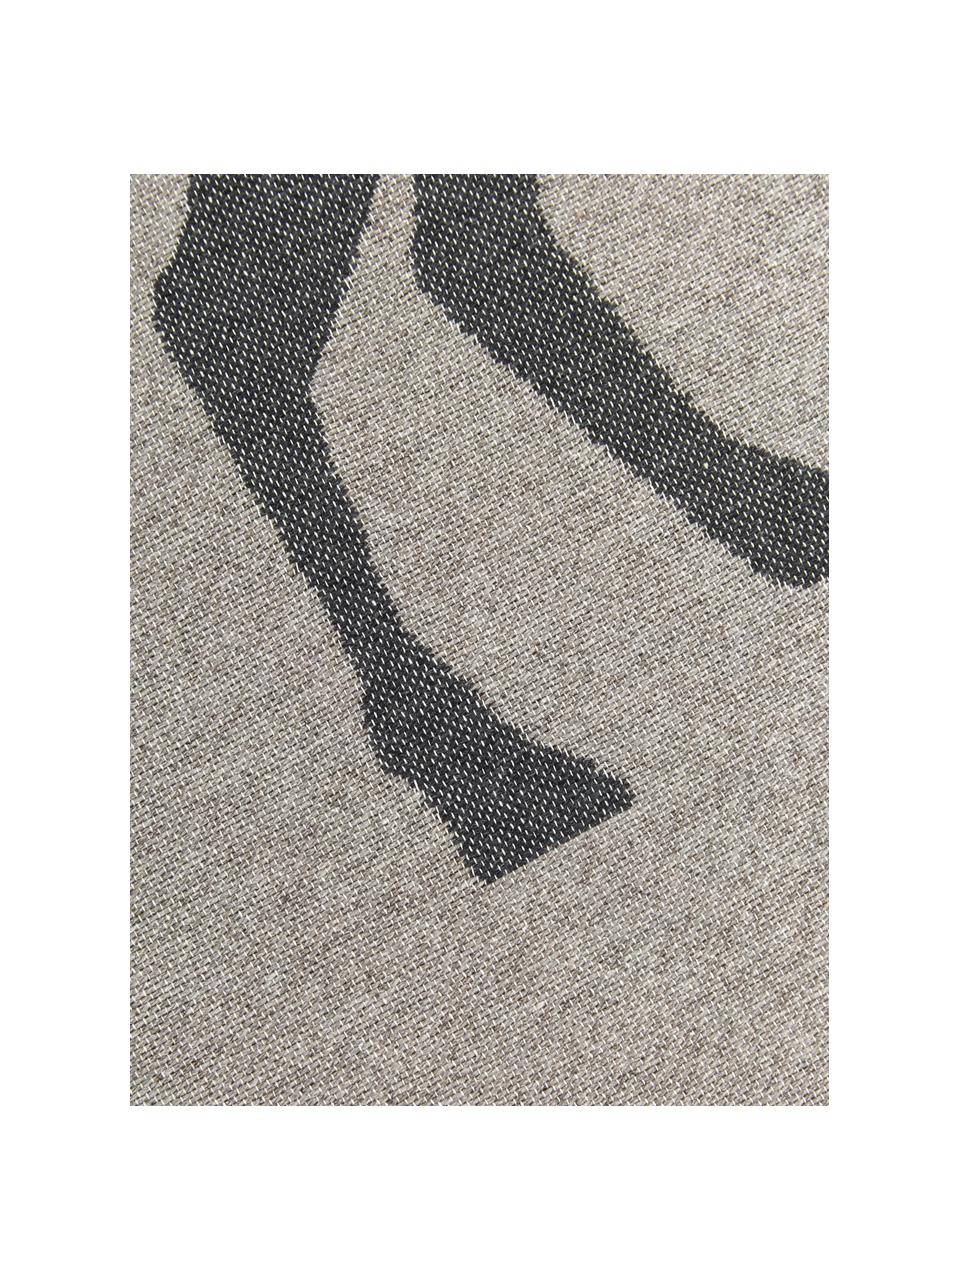 Kleiner Teppich Goliath mit Fransen und Hirschmotiv, 100% recycelte Baumwolle, Grau, Dunkelgrau, Beige, B 70 x L 120 cm (Größe XS)